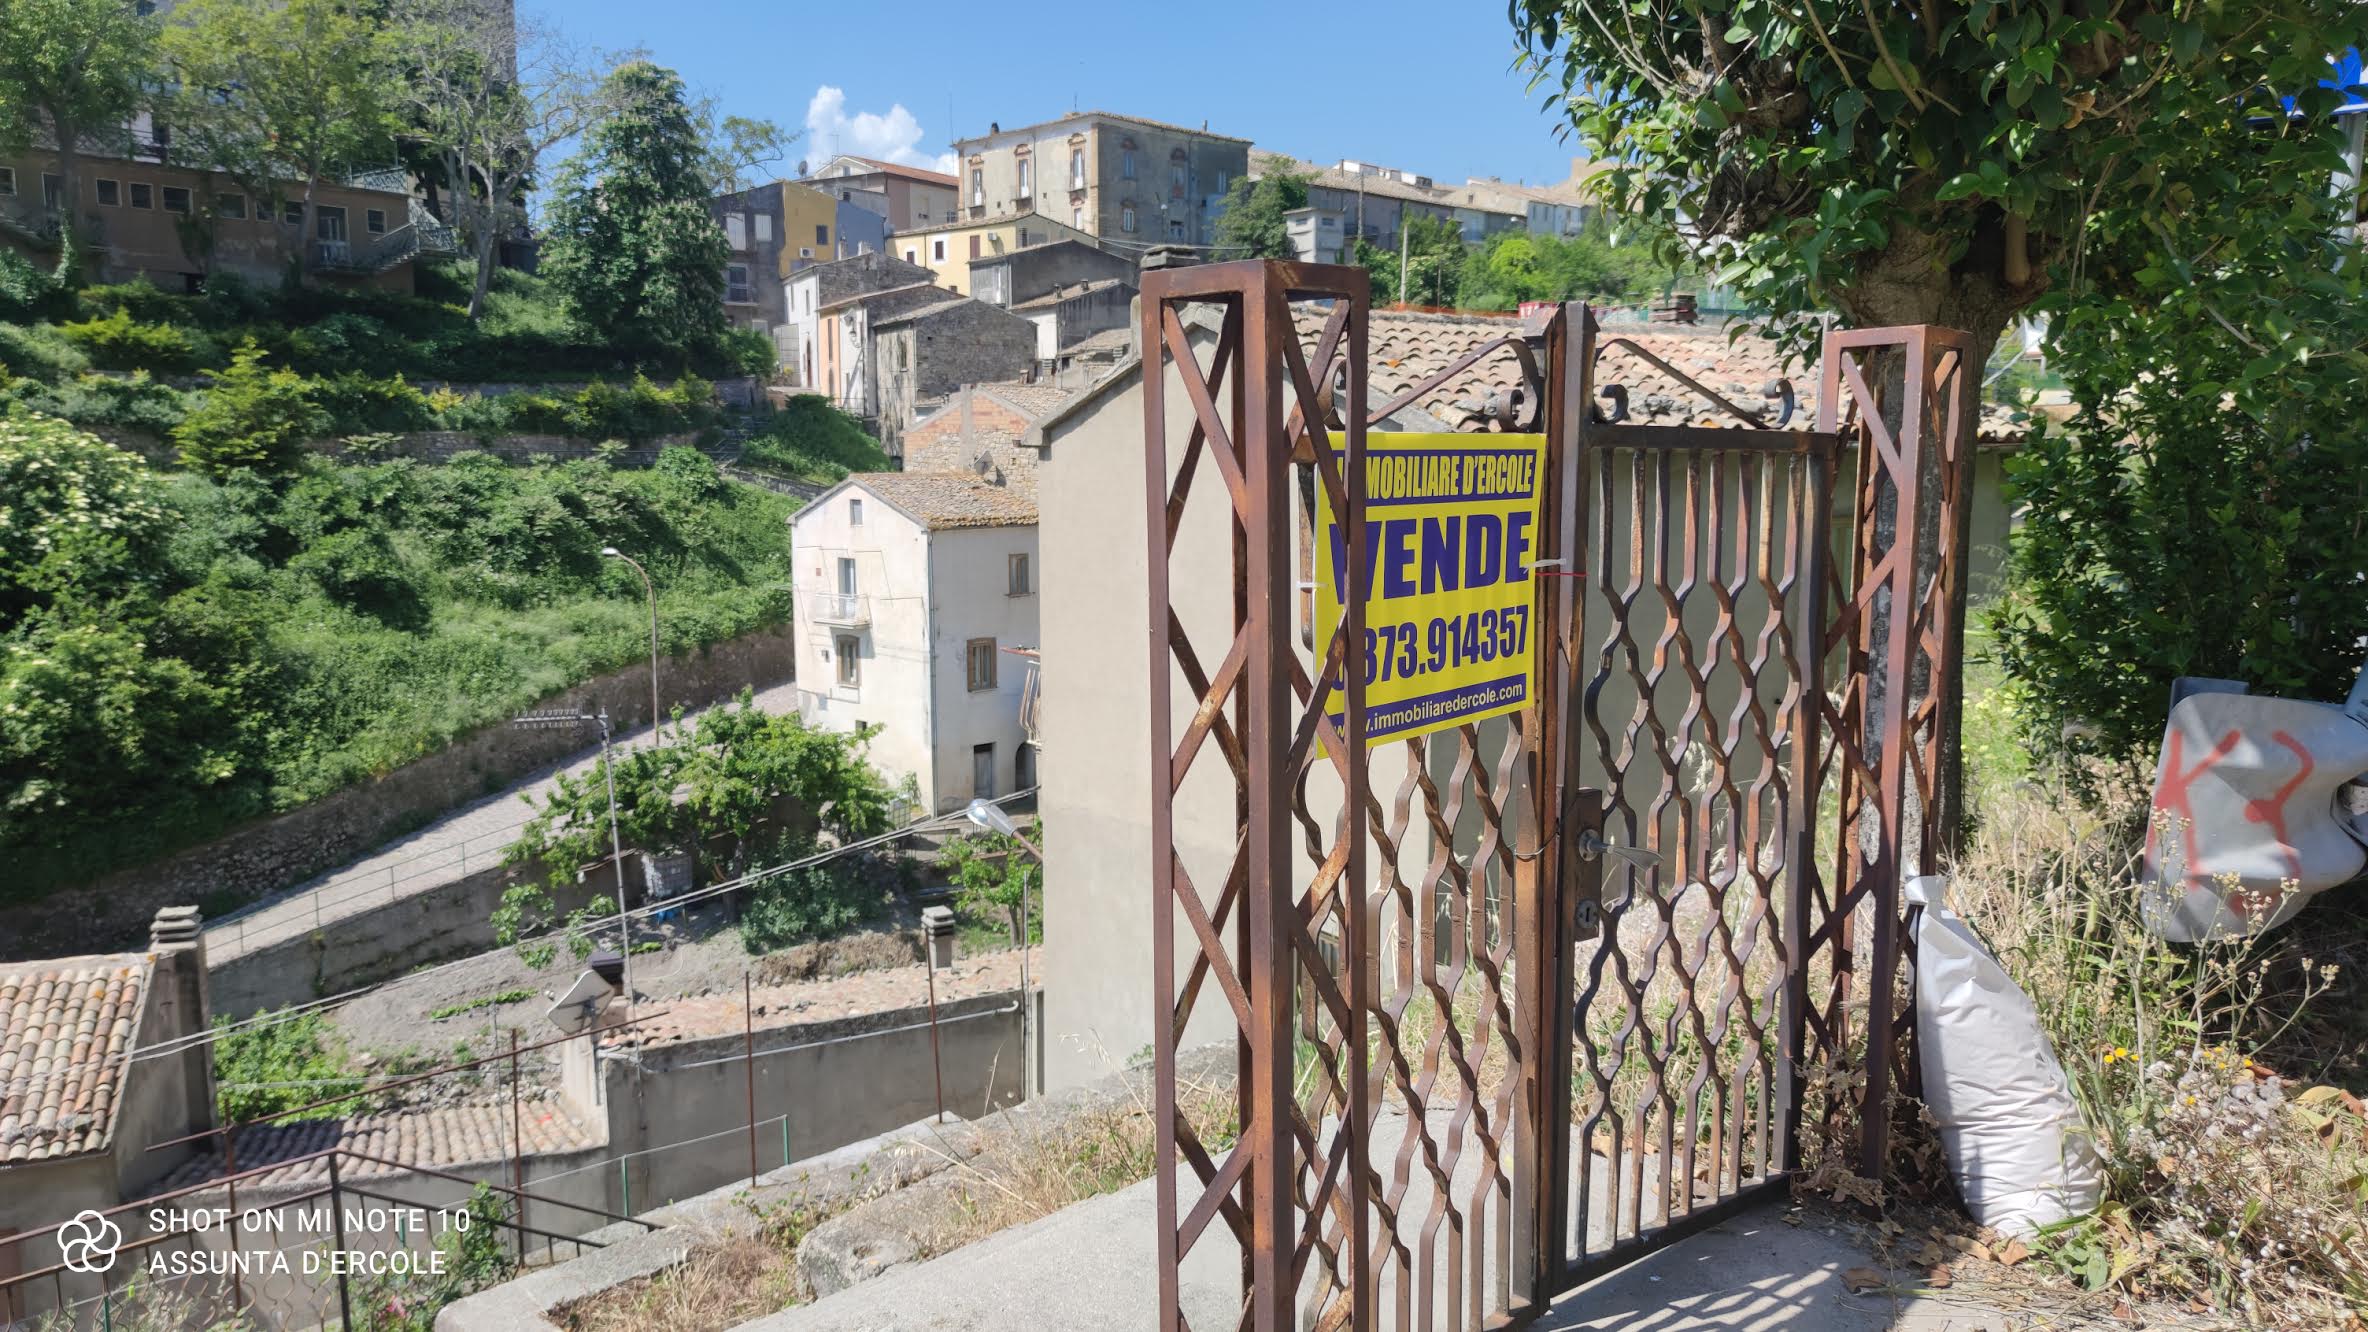 rif 1341 San Buono (CH) – Casa singola di paese con giardinetto – € 30000